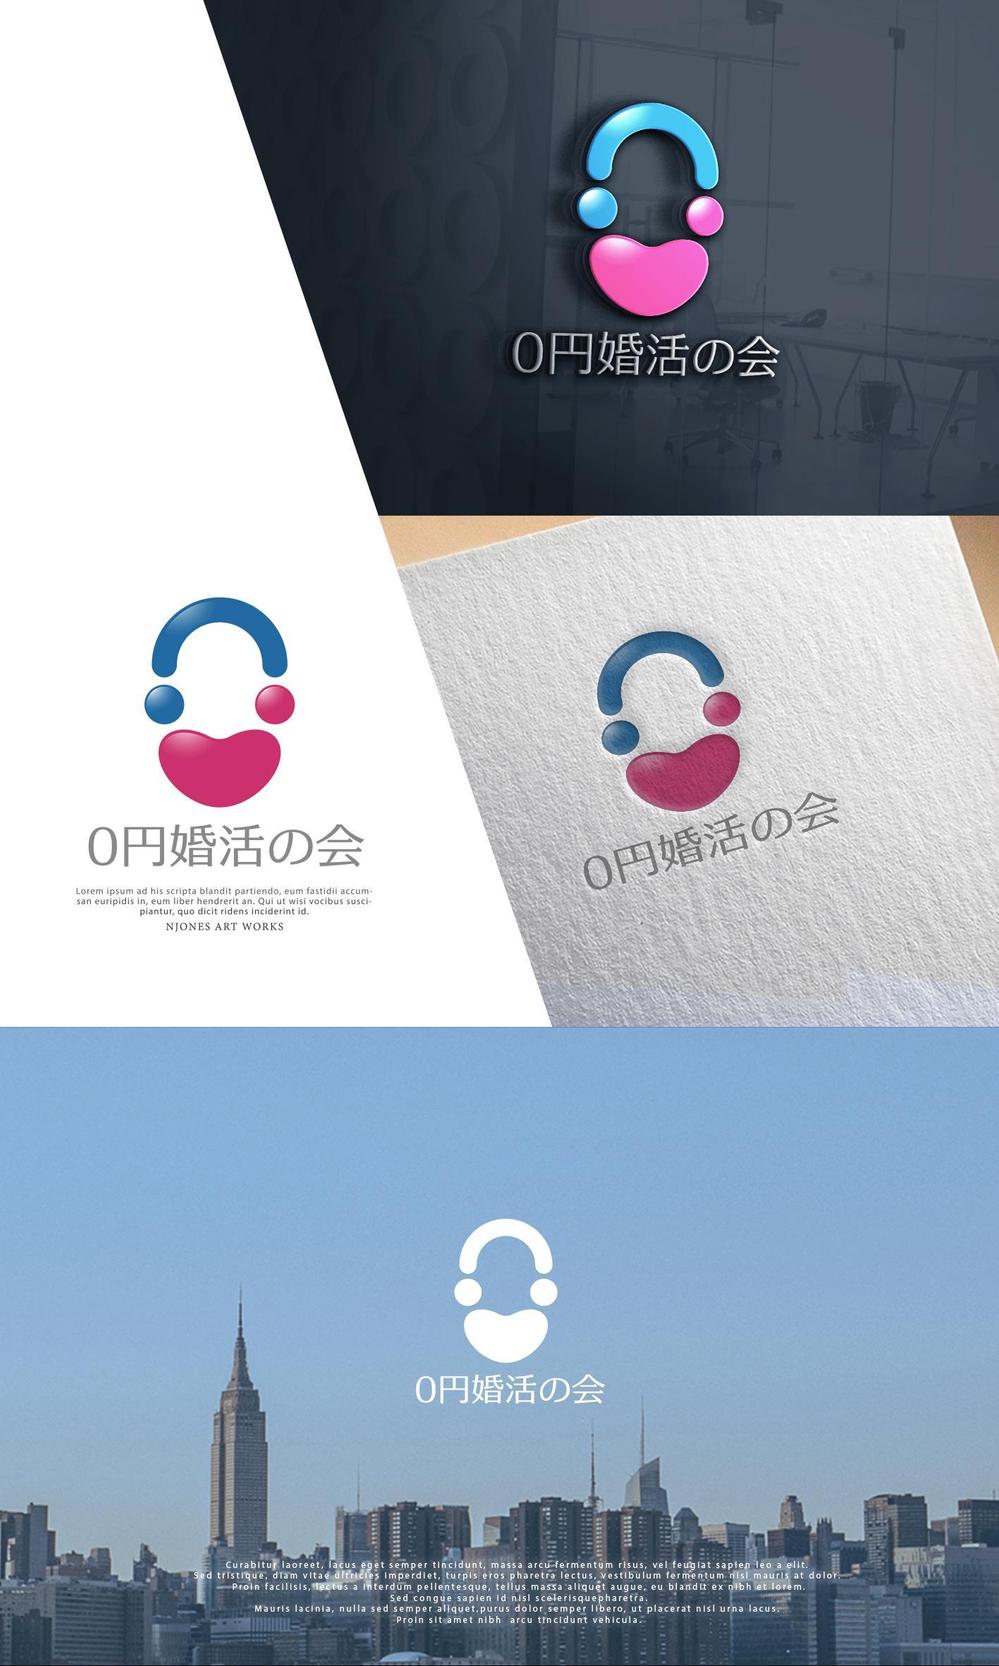 結婚相談所「0円婚活サービス」のロゴ